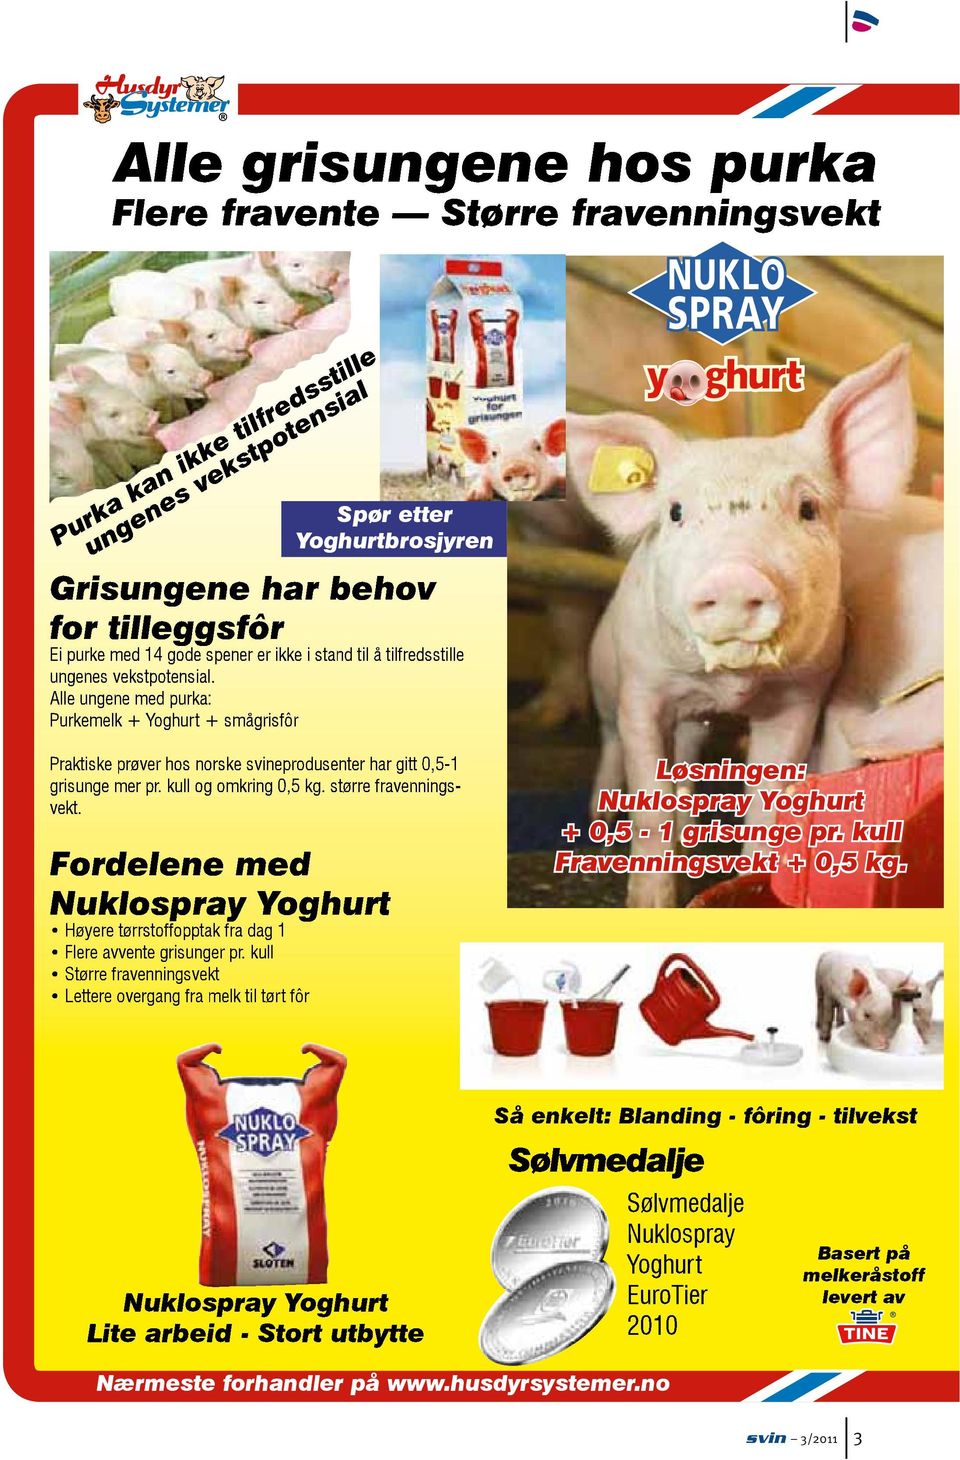 Alle ungene med purka: Purkemelk + Yoghurt + smågrisfôr Praktiske prøver hos norske svineprodusenter har gitt 0,5-1 grisunge mer pr. kull og omkring 0,5 kg. større fravenningsvekt.